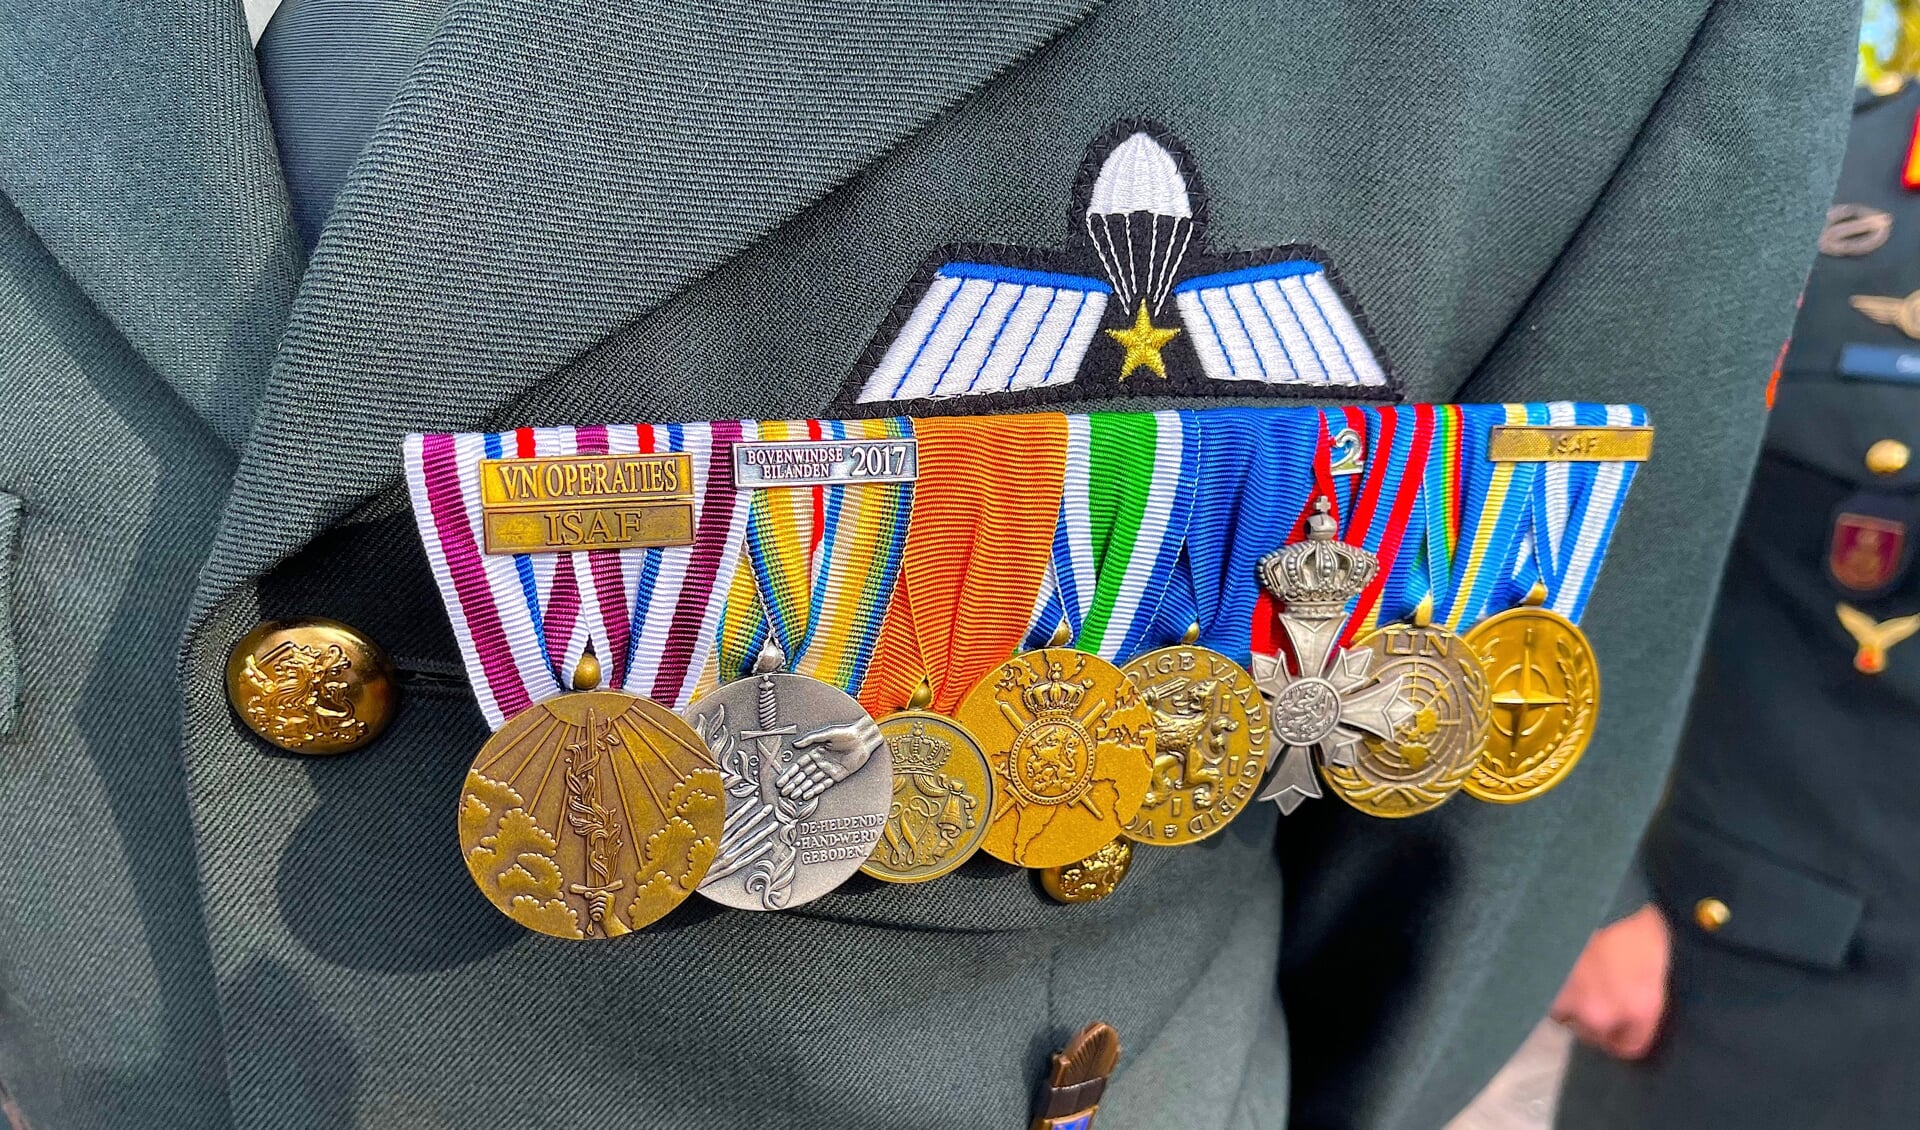 Veteranen zijn op veel plaatsen in de wereld ingezet in dienst van de vrede. De onderscheidingen die ze hiervoor kregen dragen zij met trots.